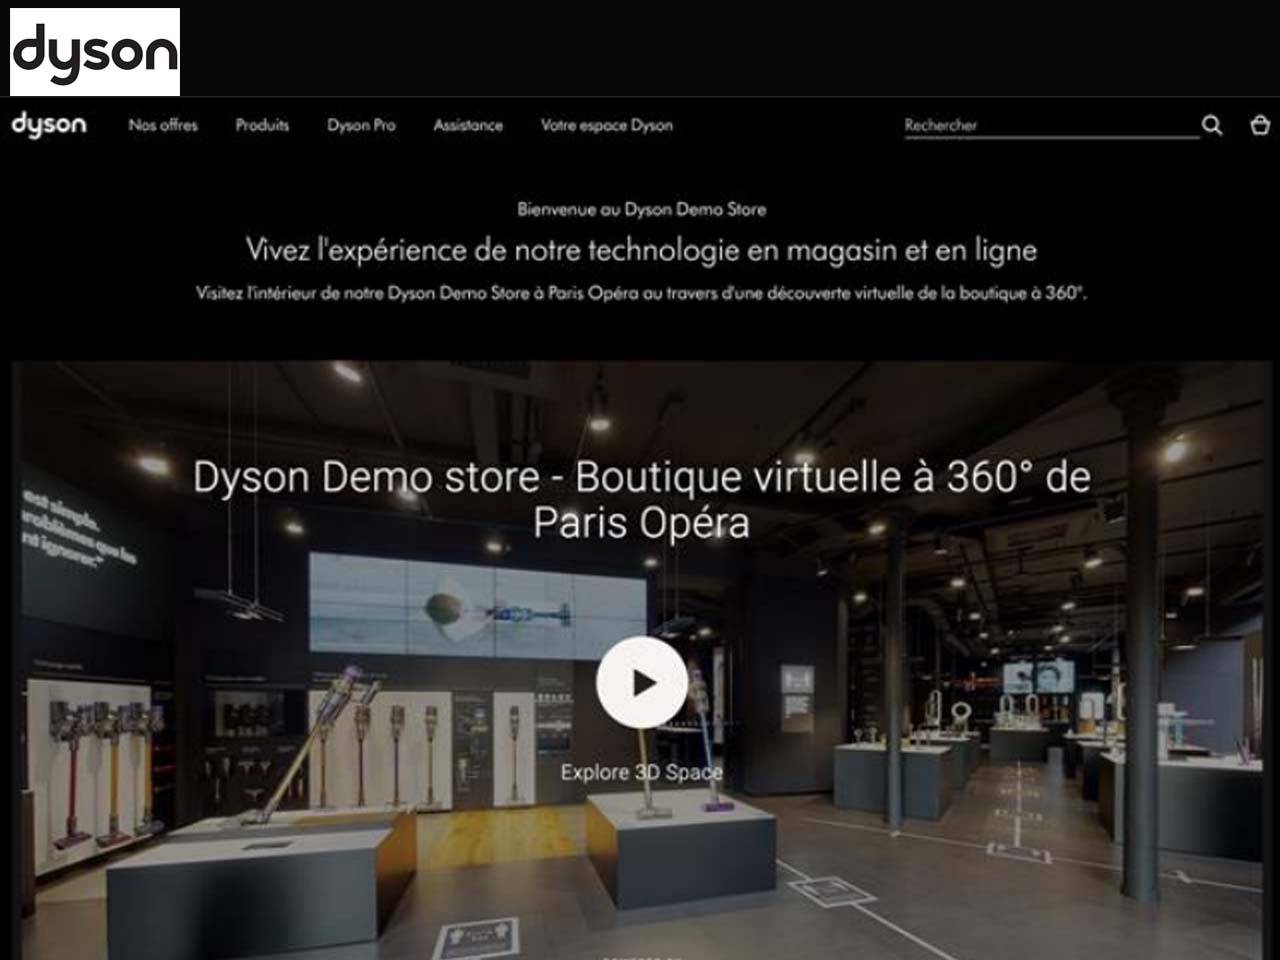 Le Dyson Demo Store Paris Opéra fête ses un an !